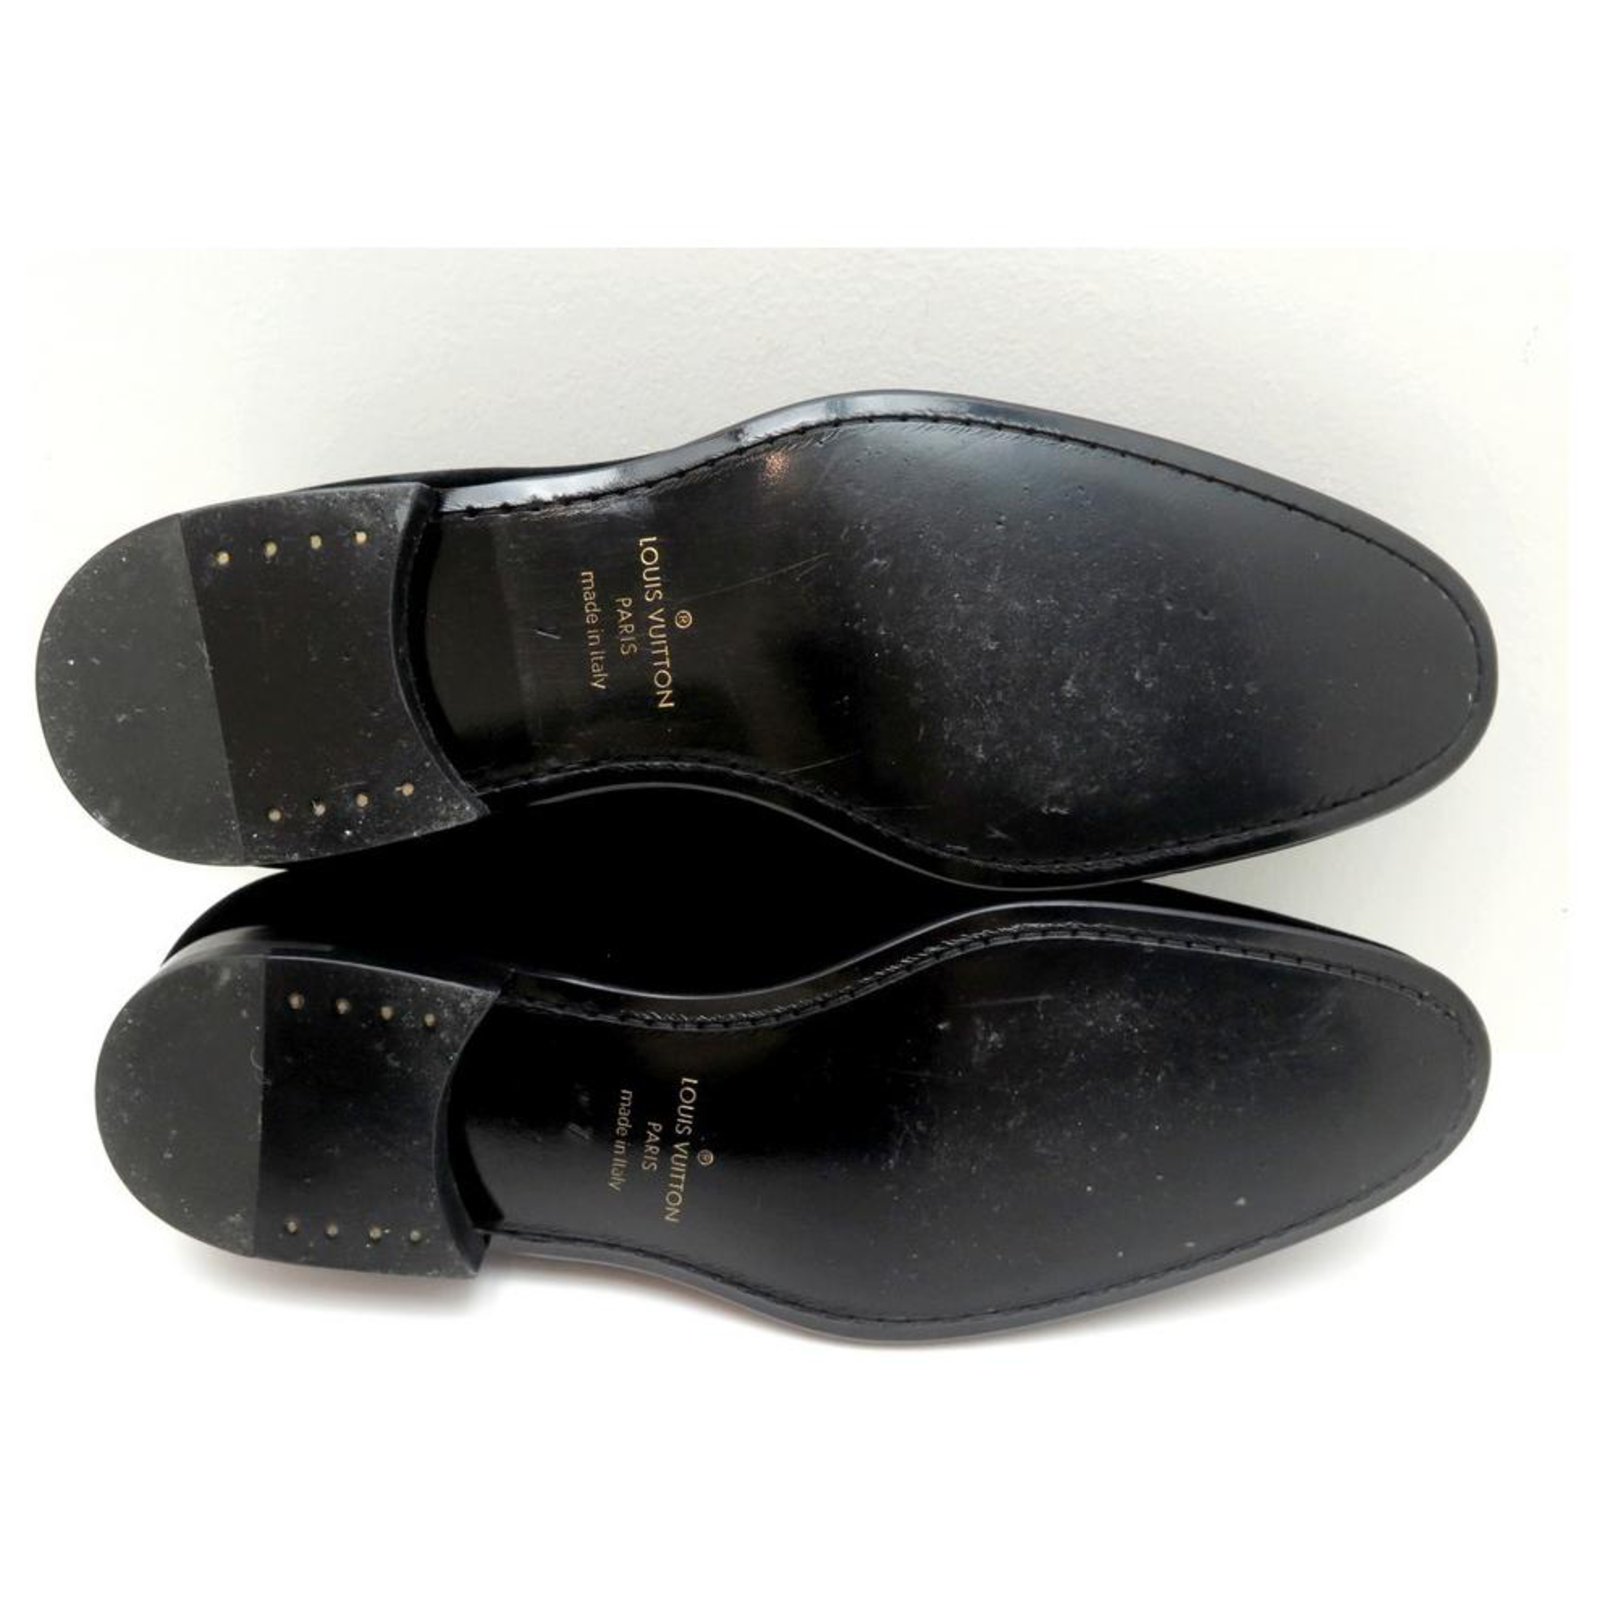 LOUIS VUITTON Mens Velvet Loafers Black Size 7.5 / 41.5 EUR